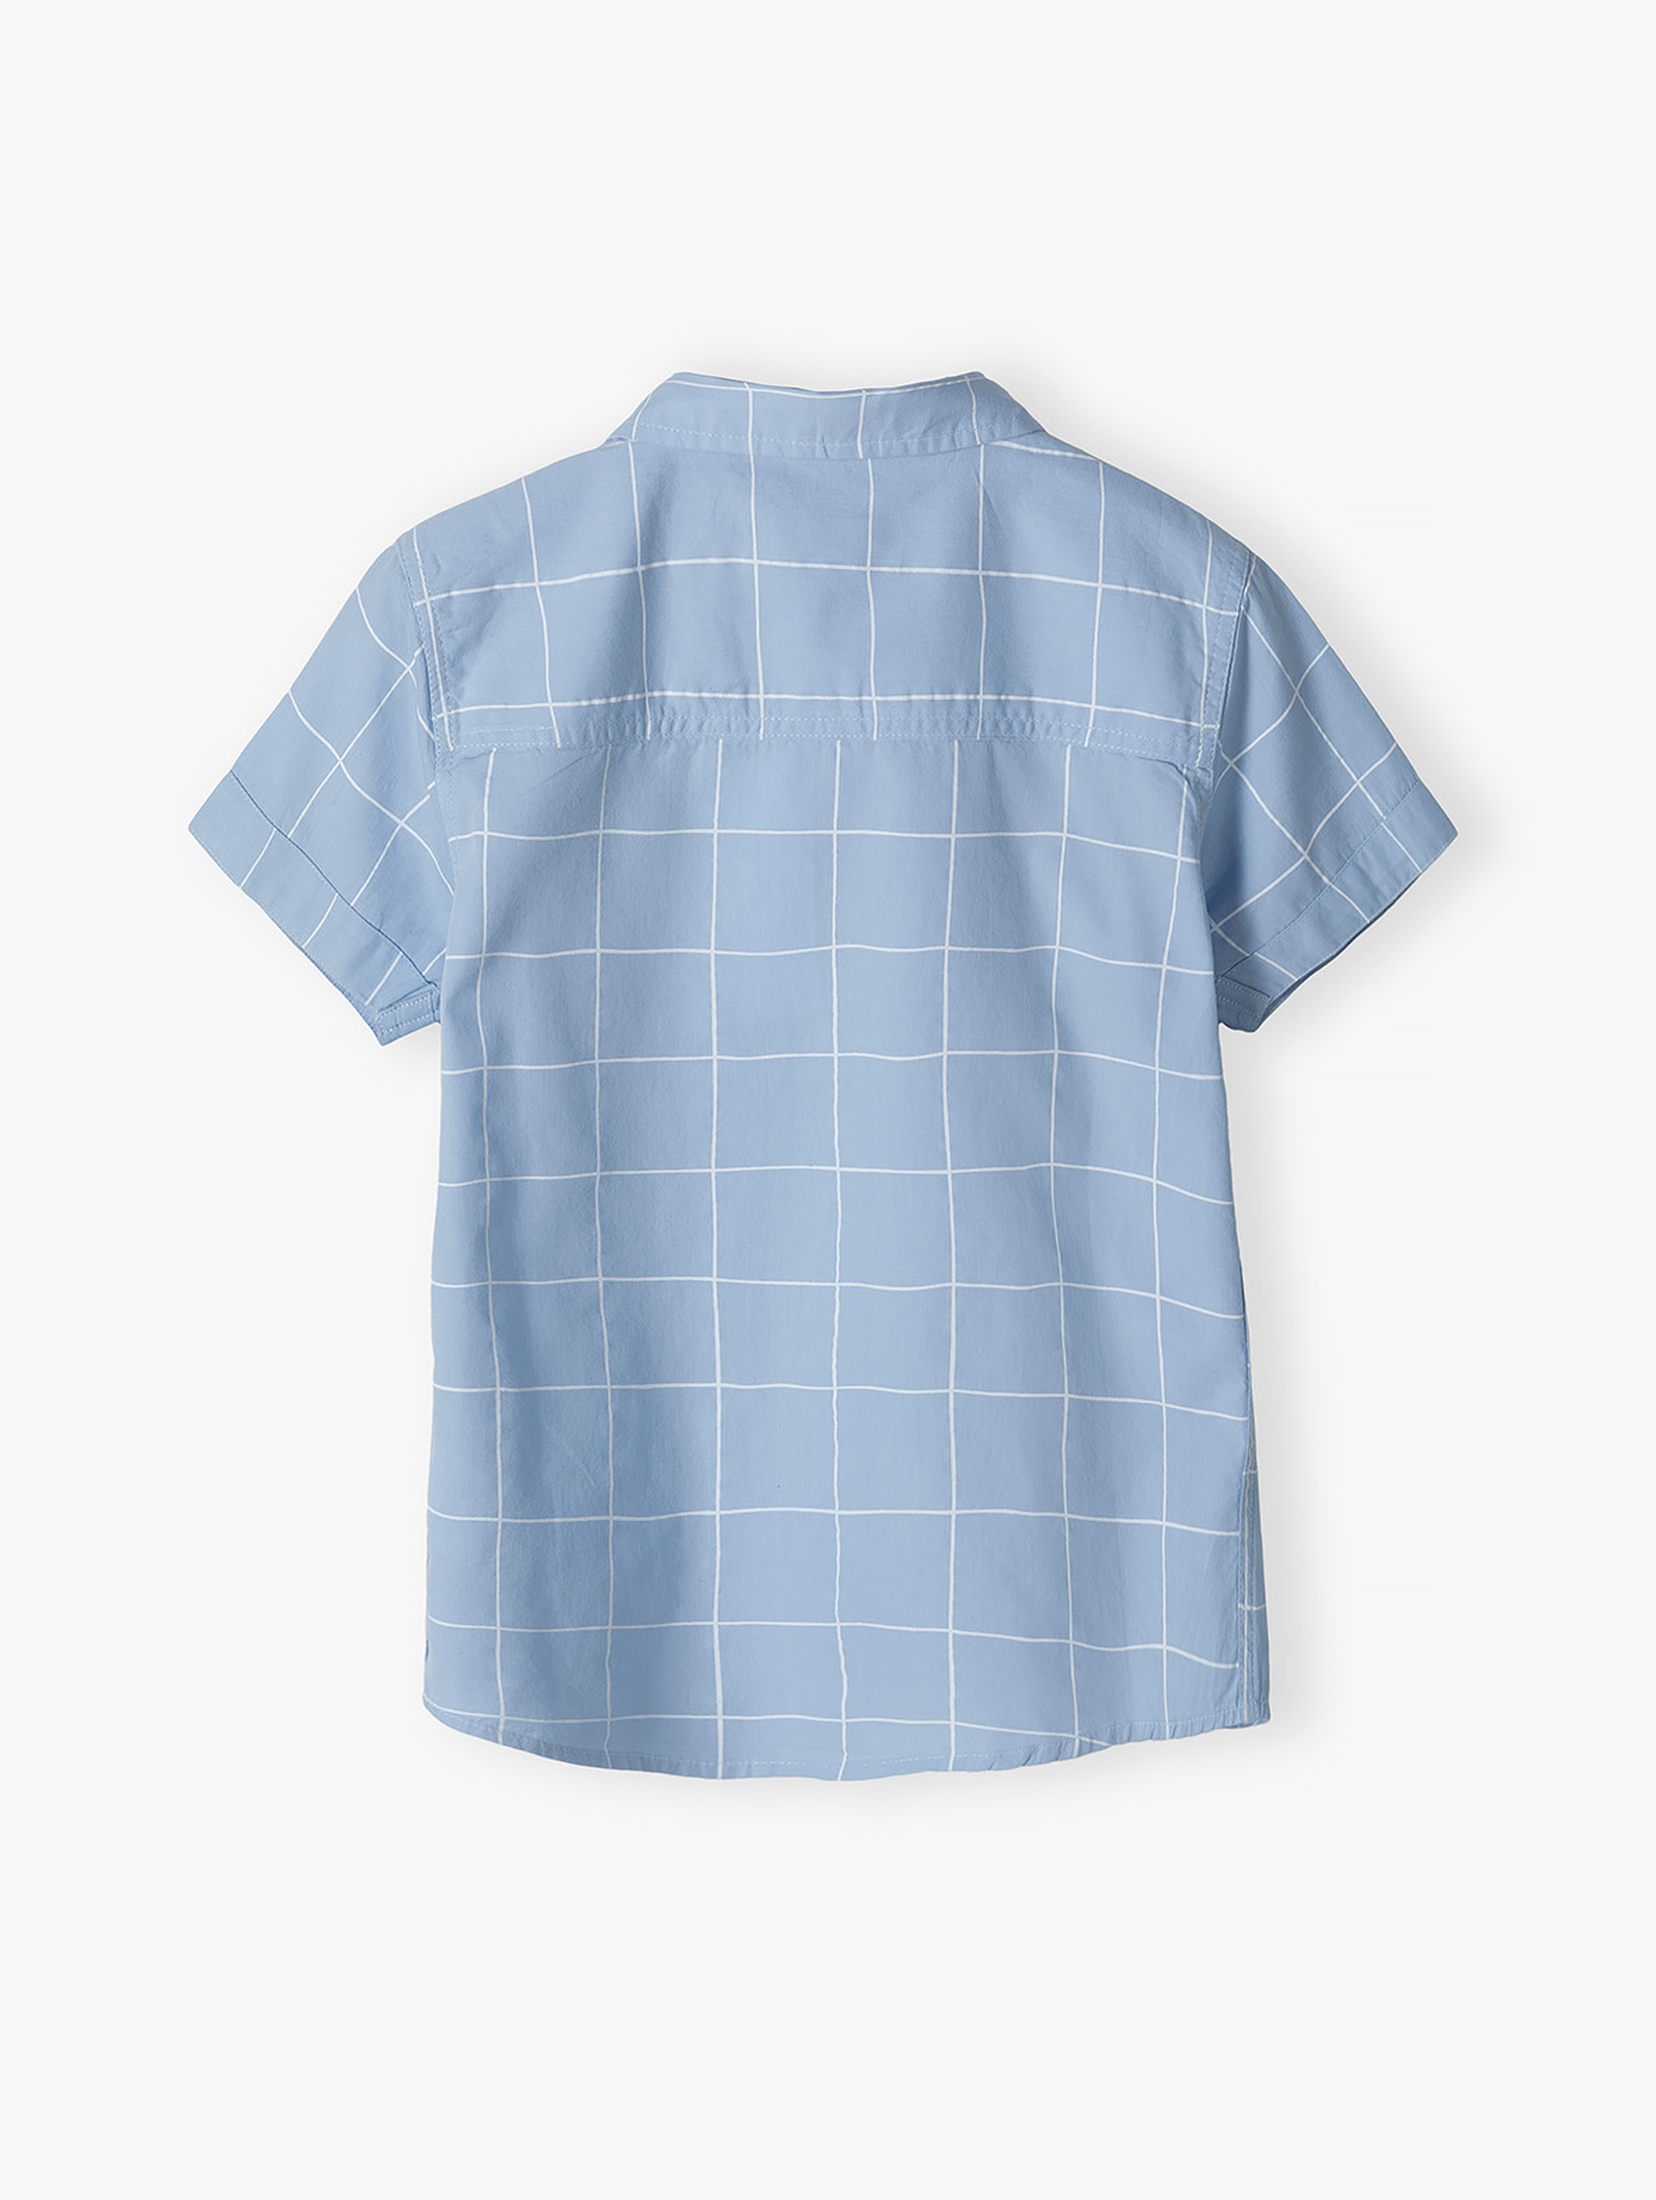 Niebieska koszula dla chłopca z krótkim rękawem w kratkę